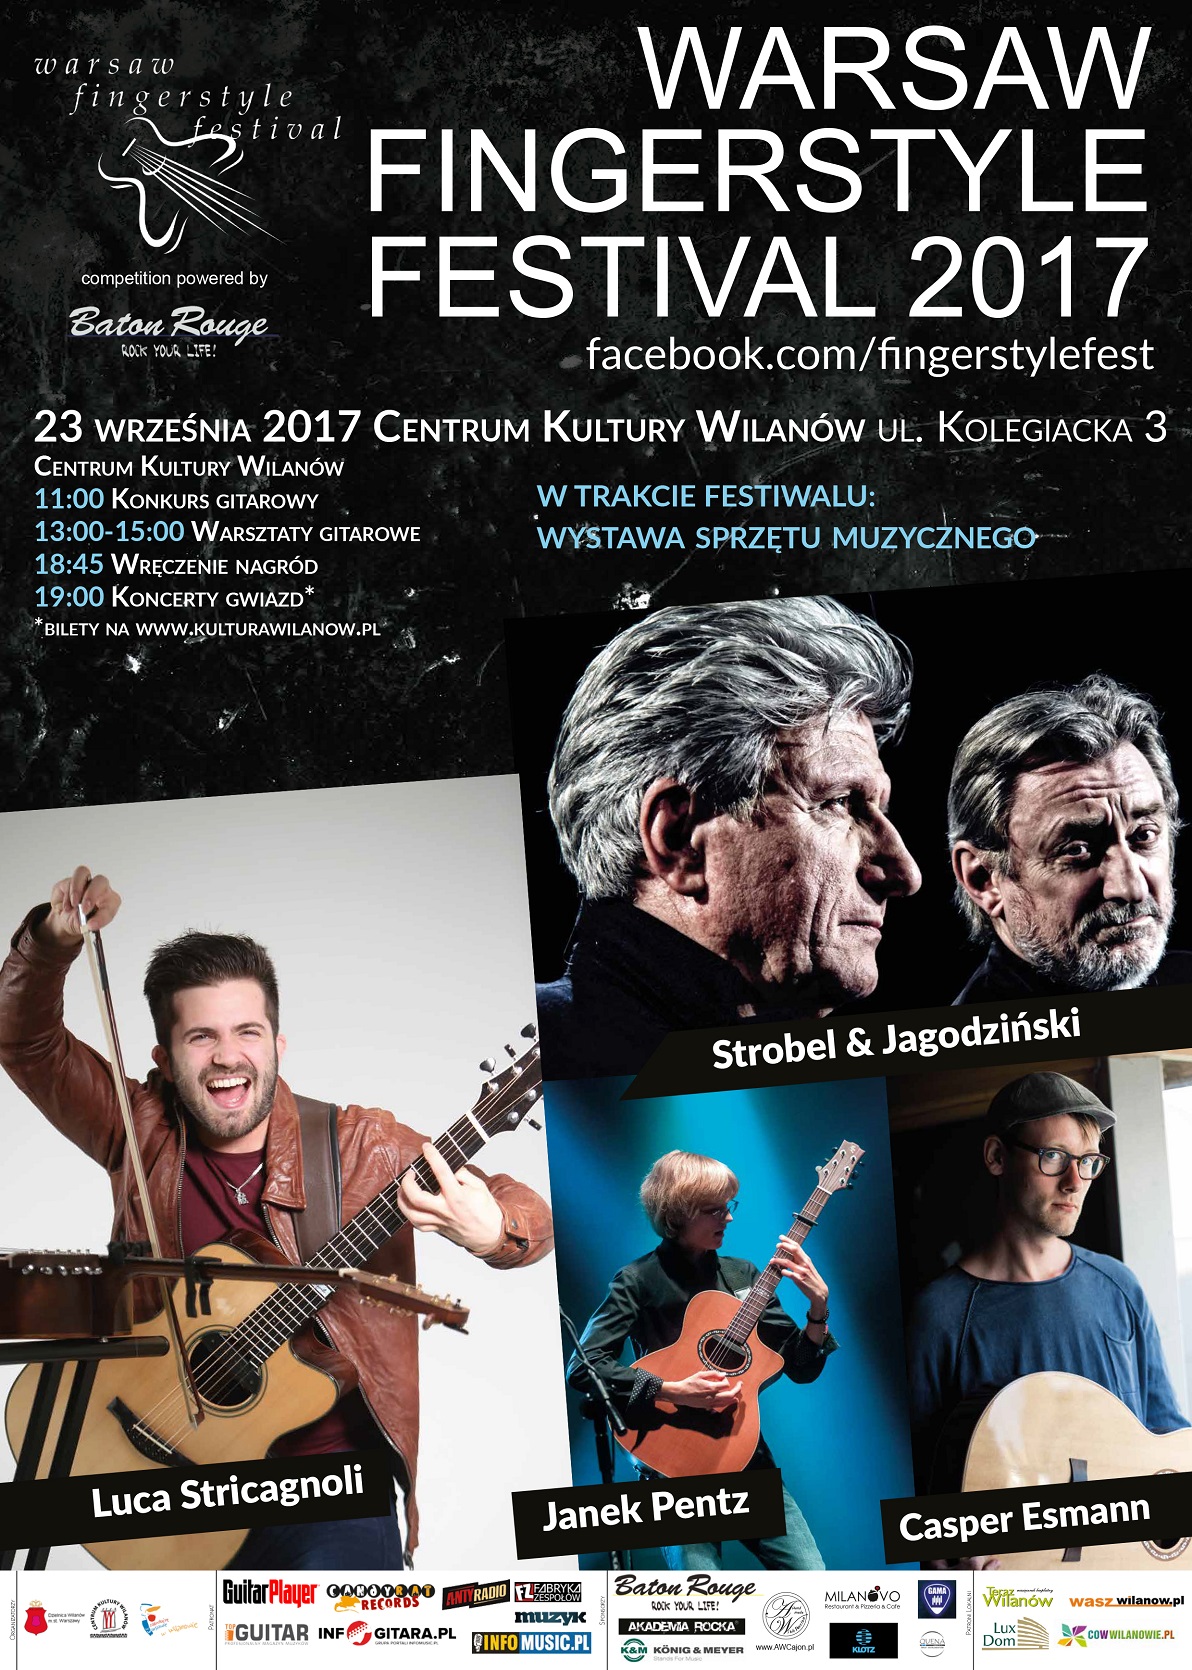 Warsaw Fingerstyle Festival 2017